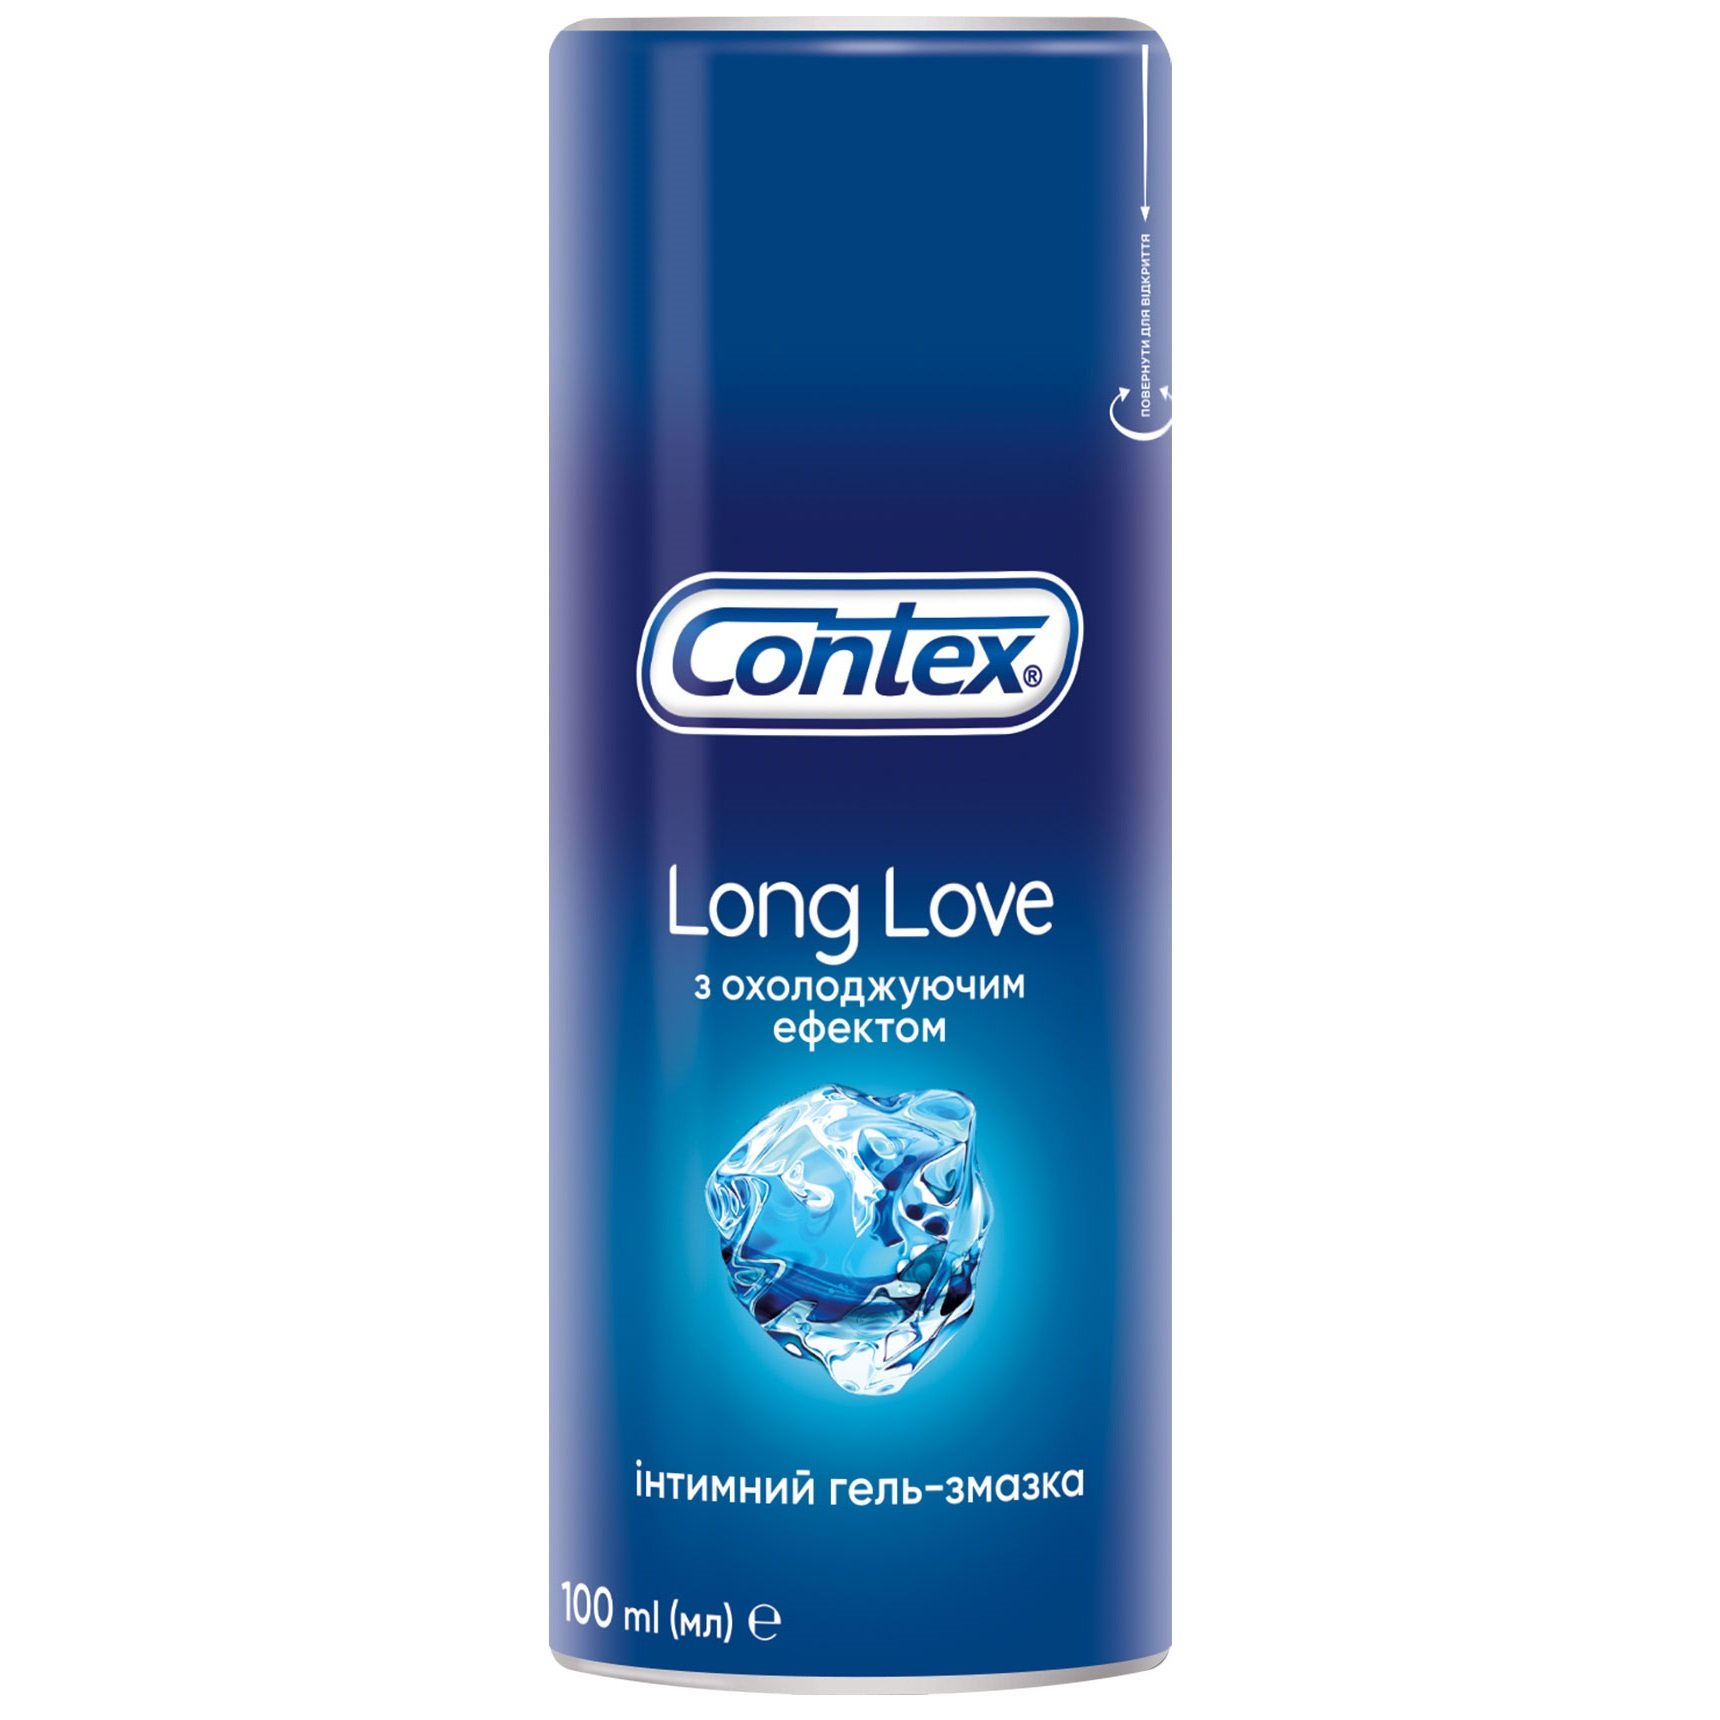 Интимный гель-смазка Contex Long Love с охлаждающим эффектом (лубрикант), 100 мл (8159536) - фото 1